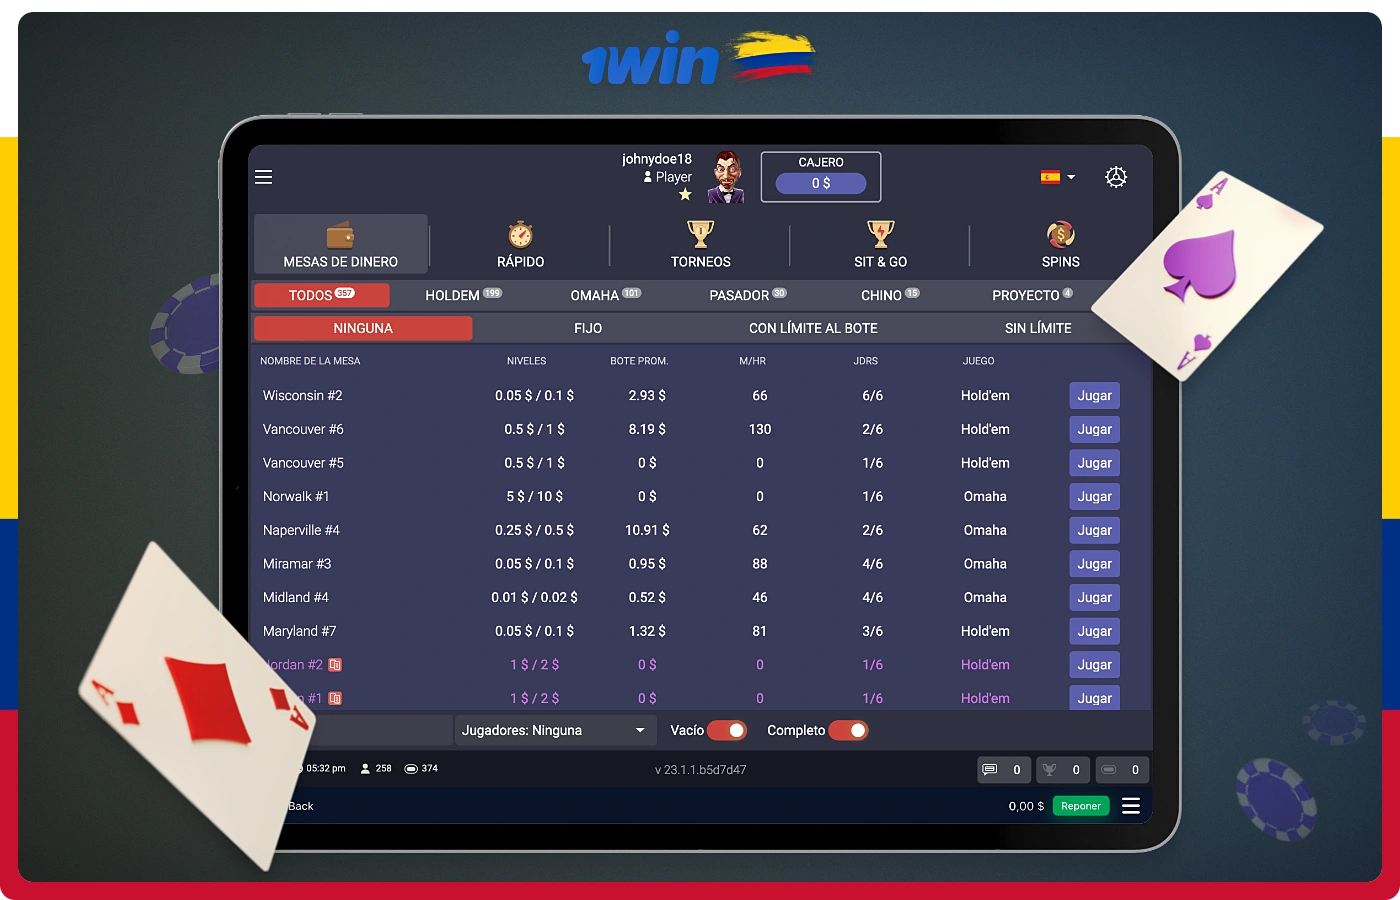 1win le permite jugar al póquer en línea y competir contra usuarios de todo el mundo